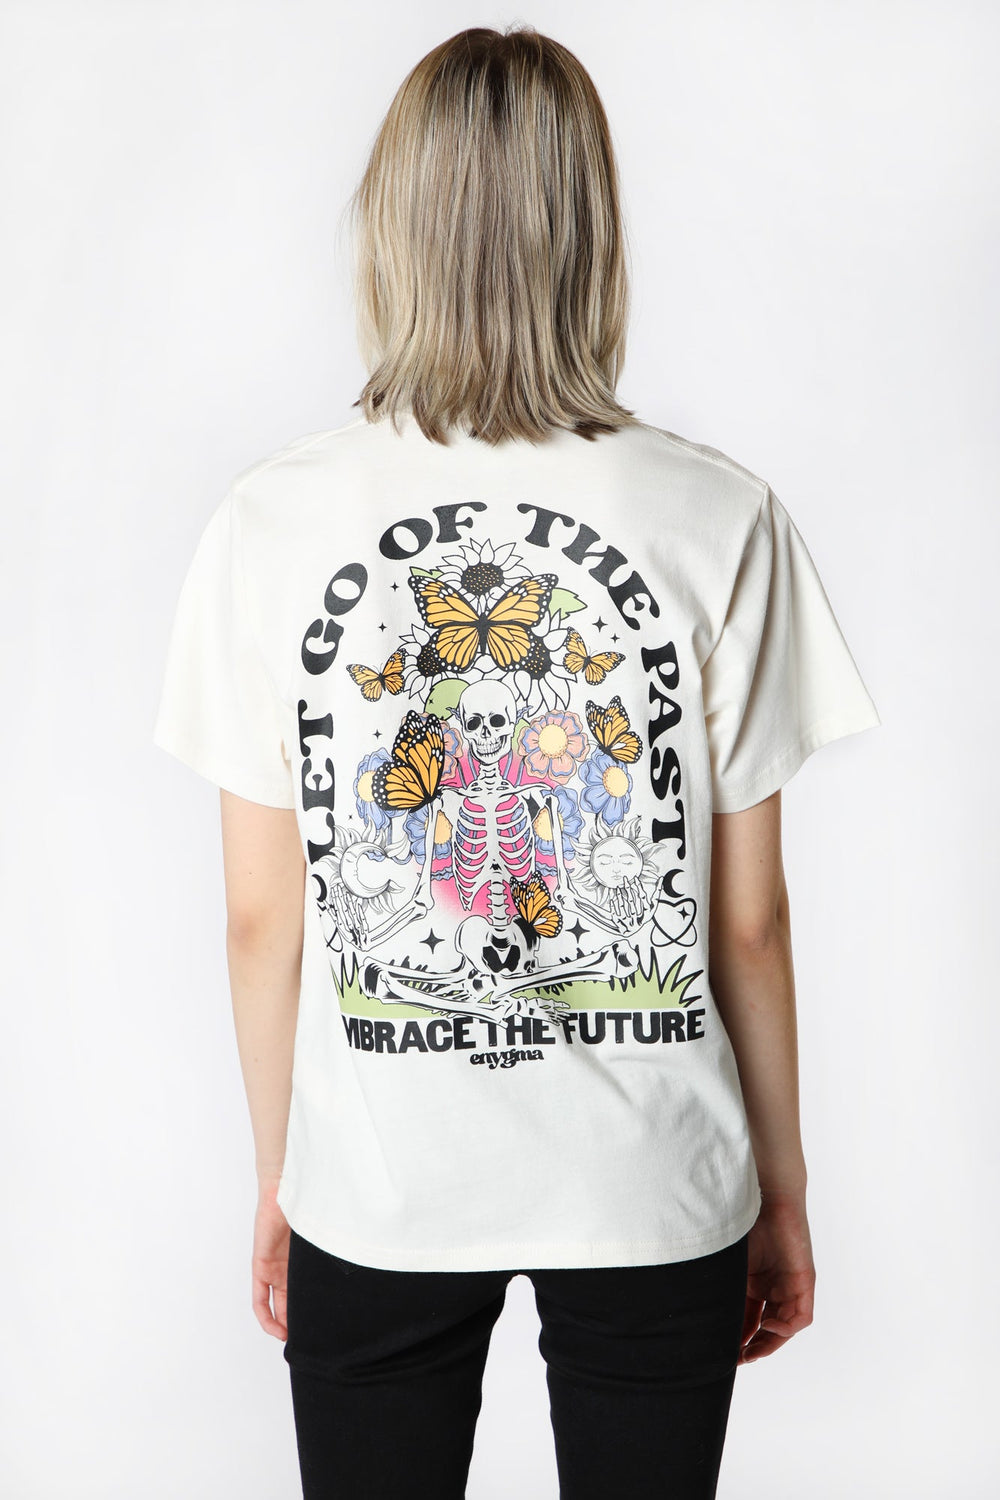 T-Shirt Imprimé Embrace The Future Enygma Femme T-Shirt Imprimé Embrace The Future Enygma Femme